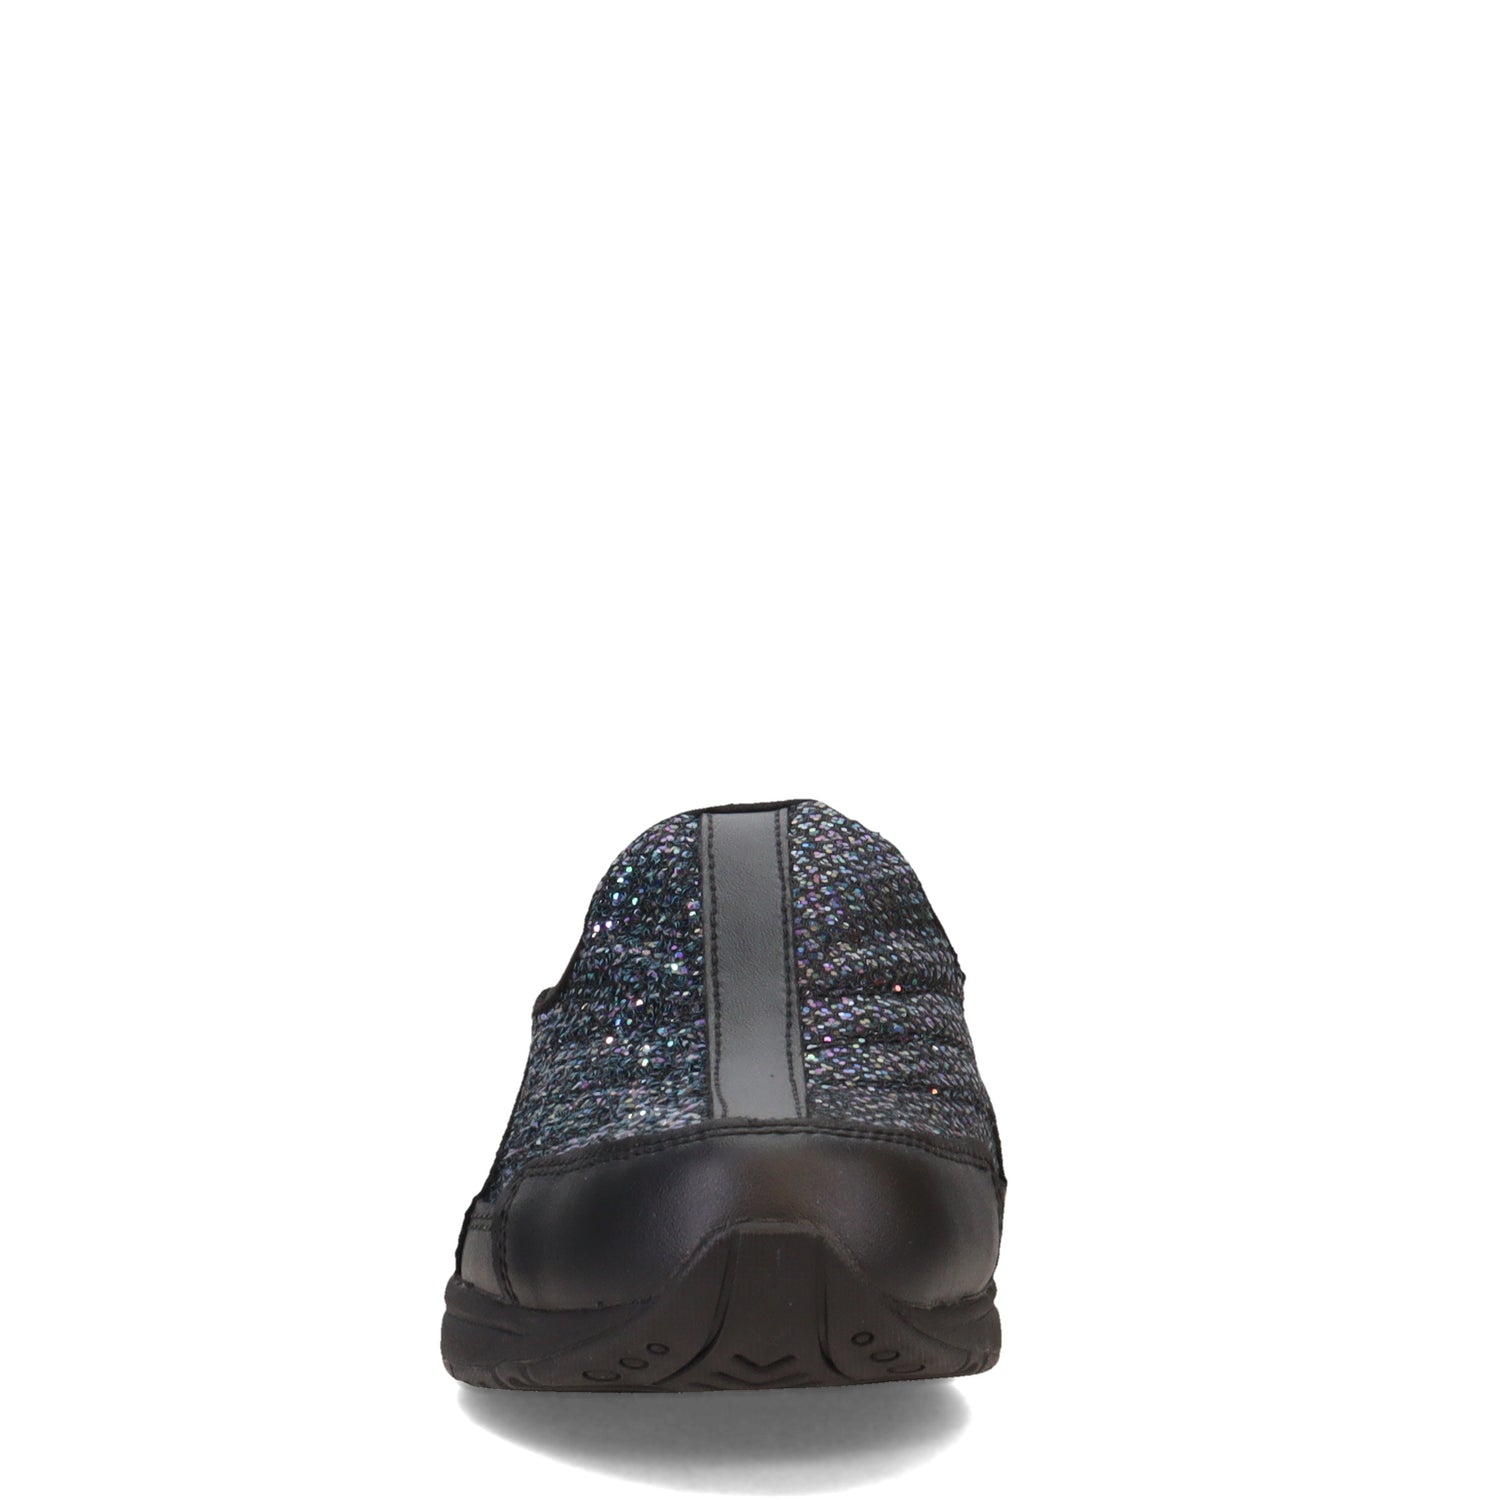 Peltz Shoes  Women's Easy Spirit Traveltime Classic Clog BLACK GLITTER TTIME638-001